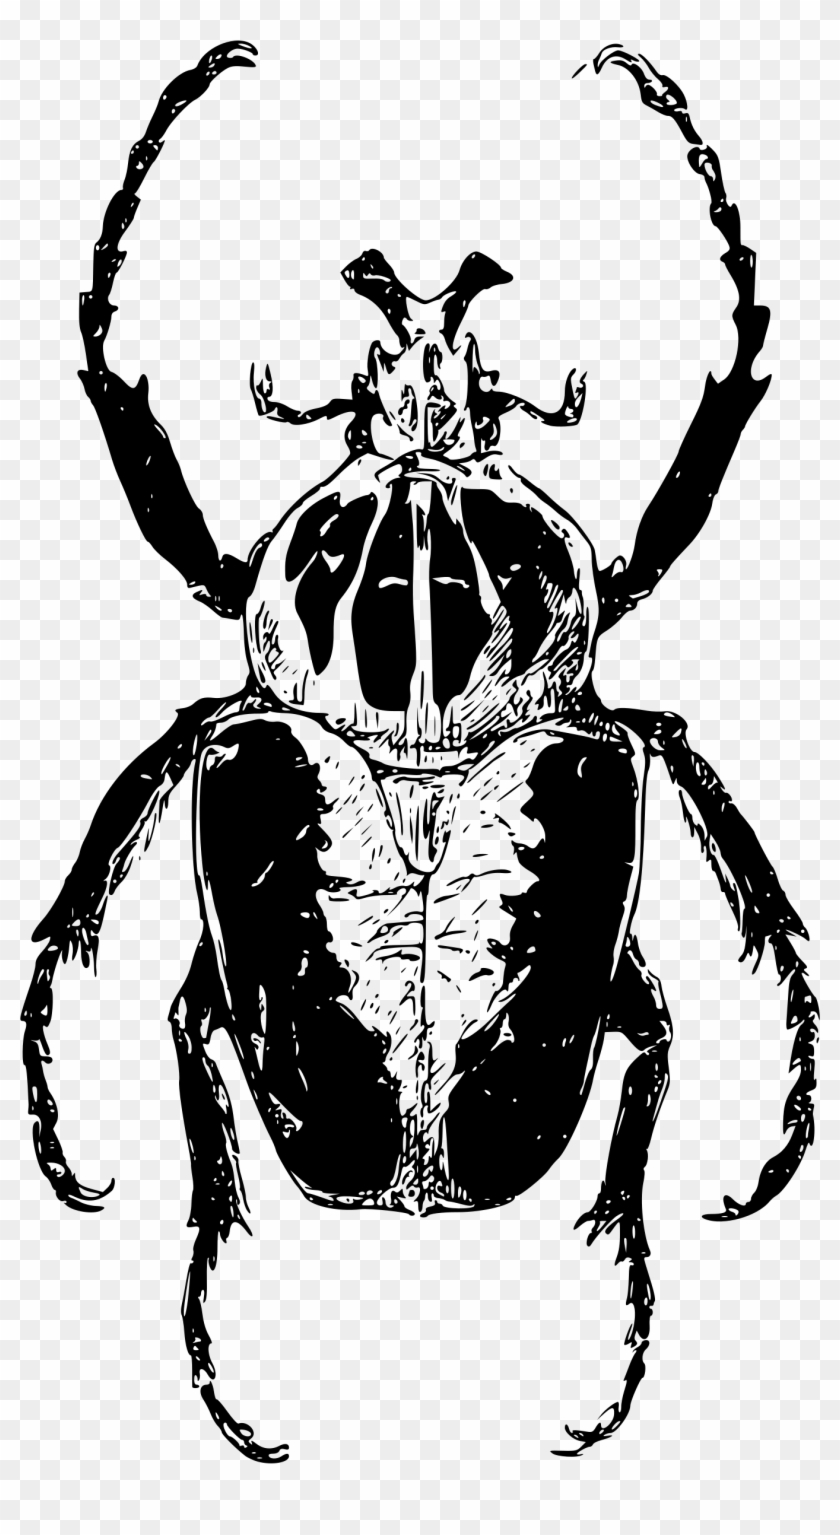 Atlas Beetle - Atlas Beetle Png #852452